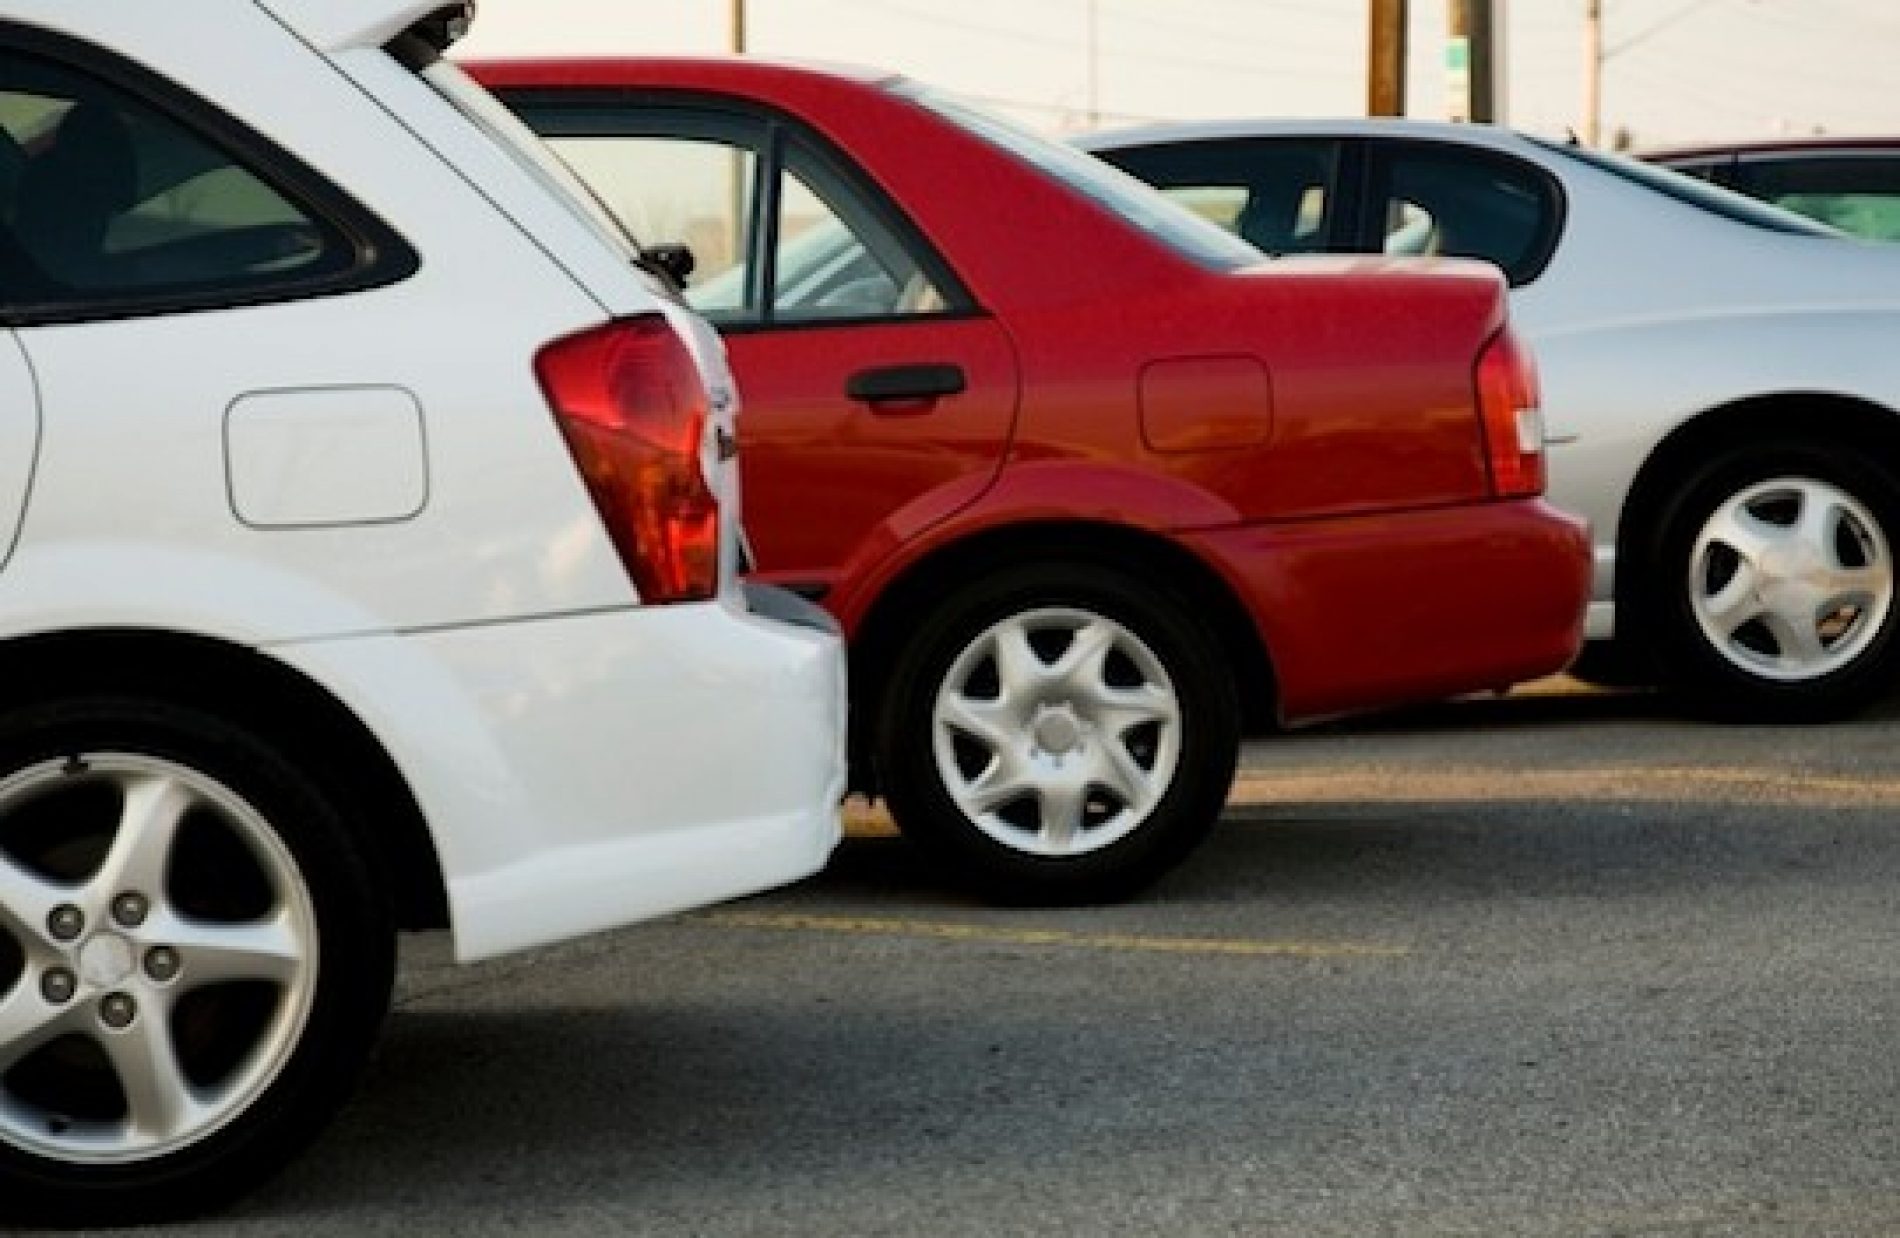 BARRETOS: Homem registra queixa de furto em seu veículo apreendido no pátio da CIRETRAN